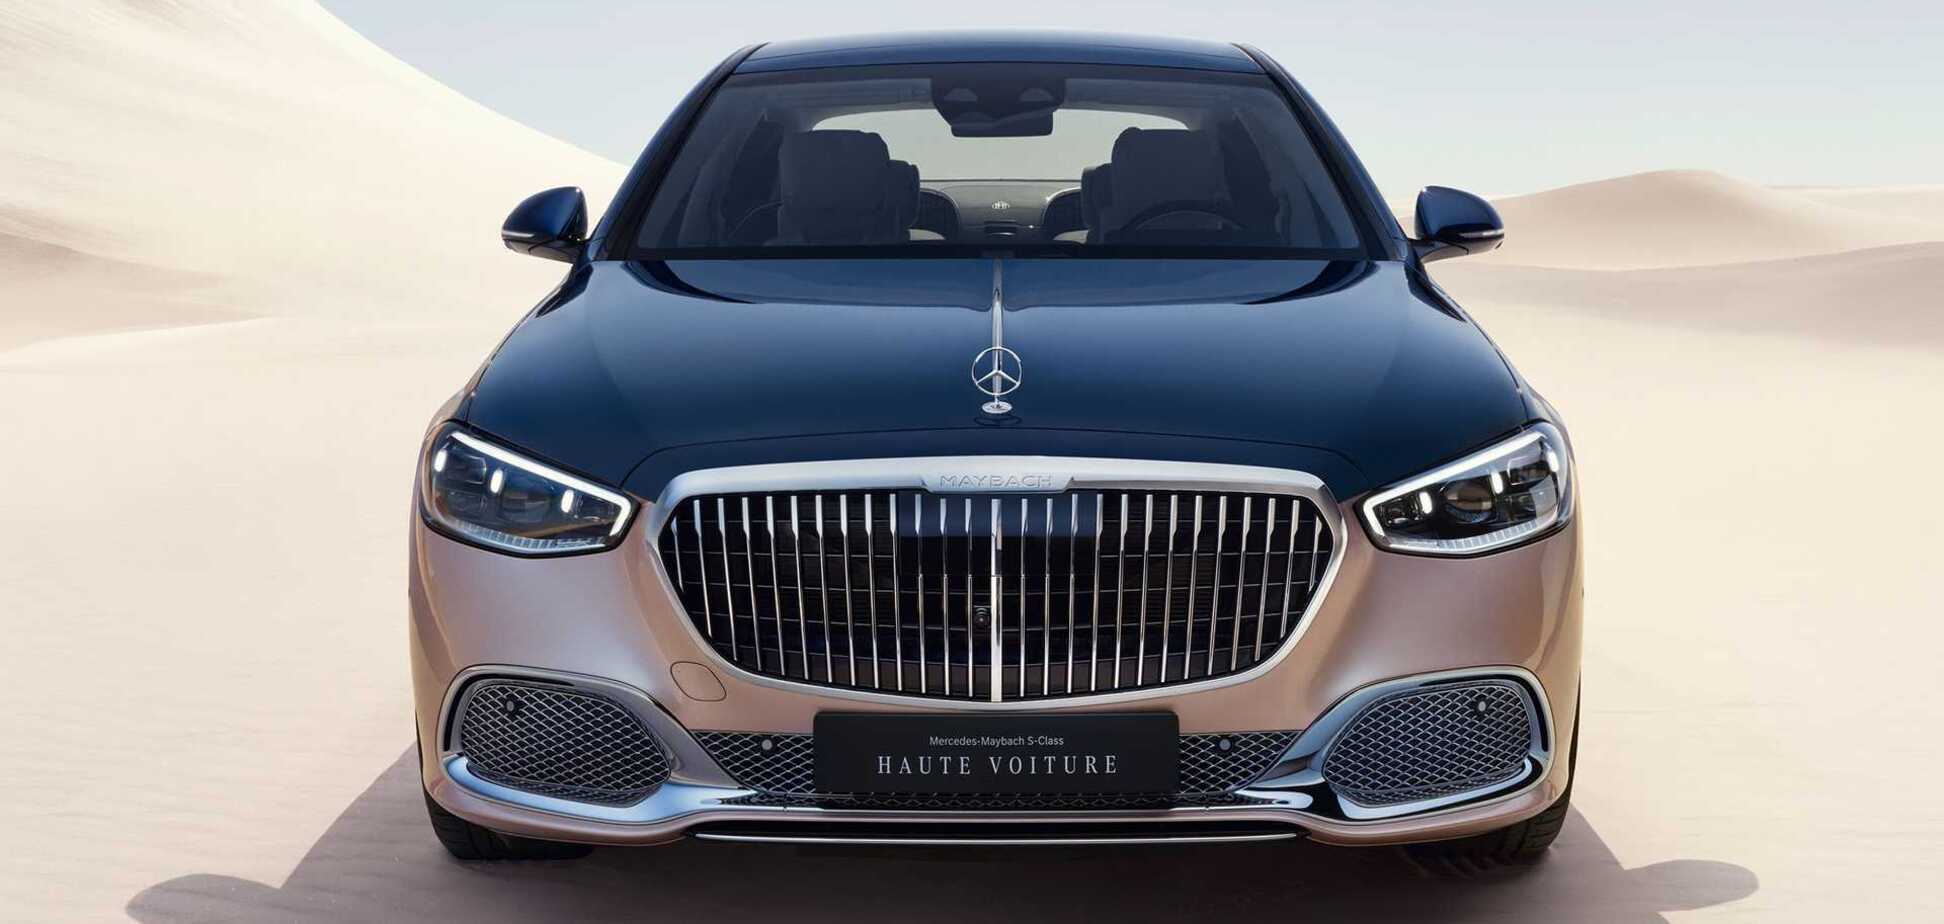 Mercedes-Maybach представили роскошный S-Class Haute Voiture